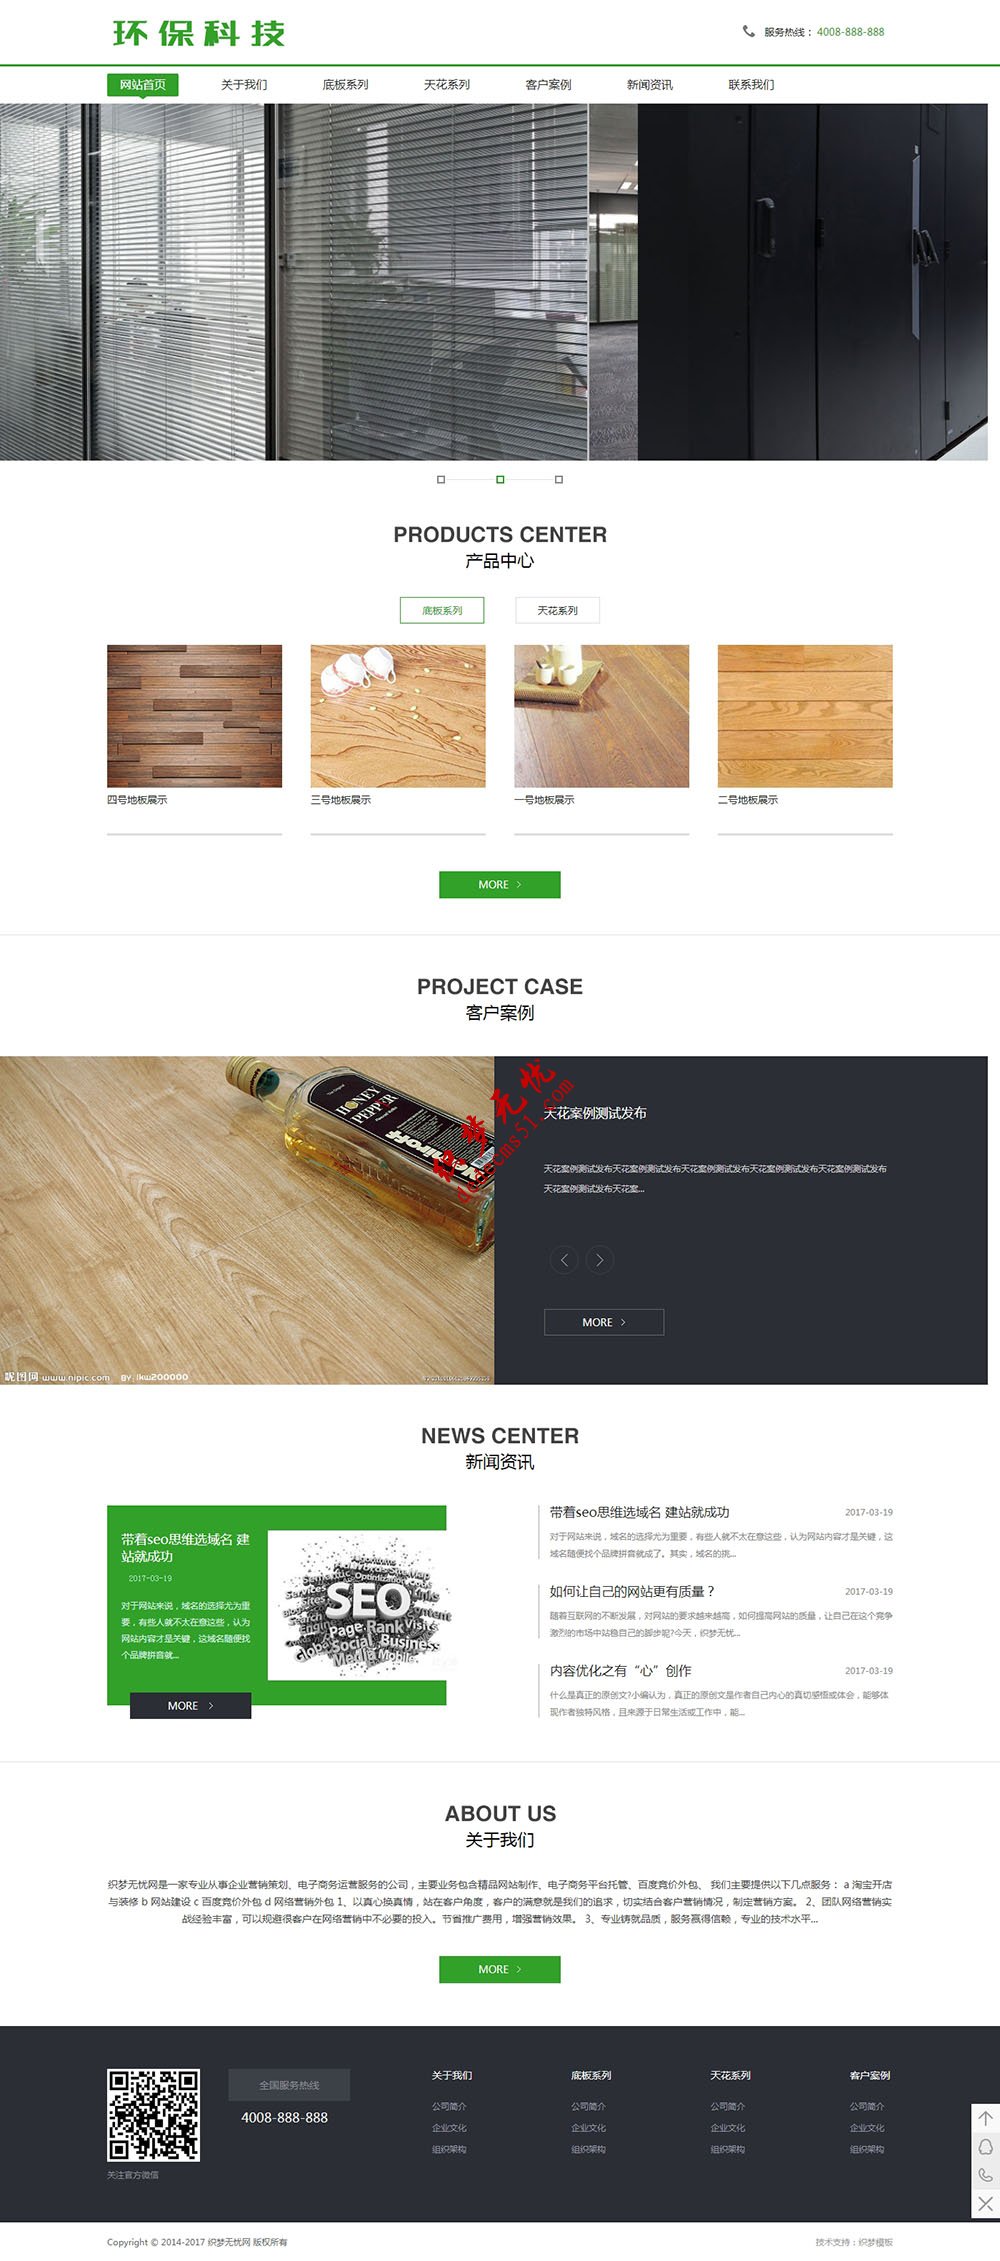 绿色家装地板瓷砖天花板产品展示企业公司网站织梦模板下载（带手机）